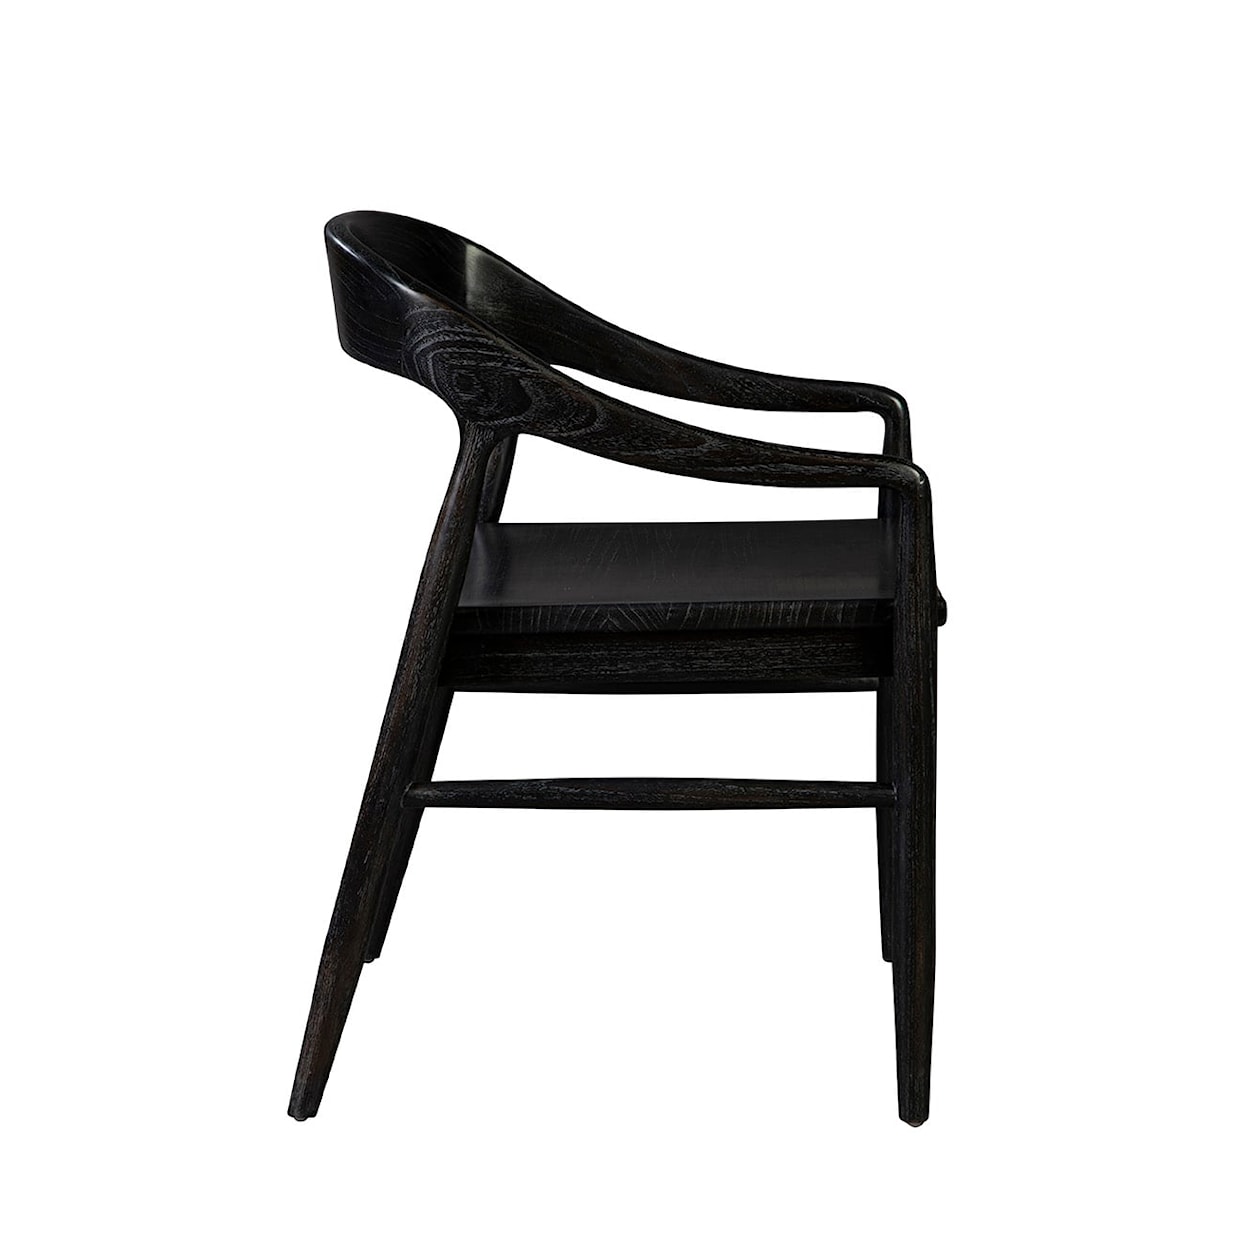 Furniture Classics Furniture Classics Townsend Arm Chair